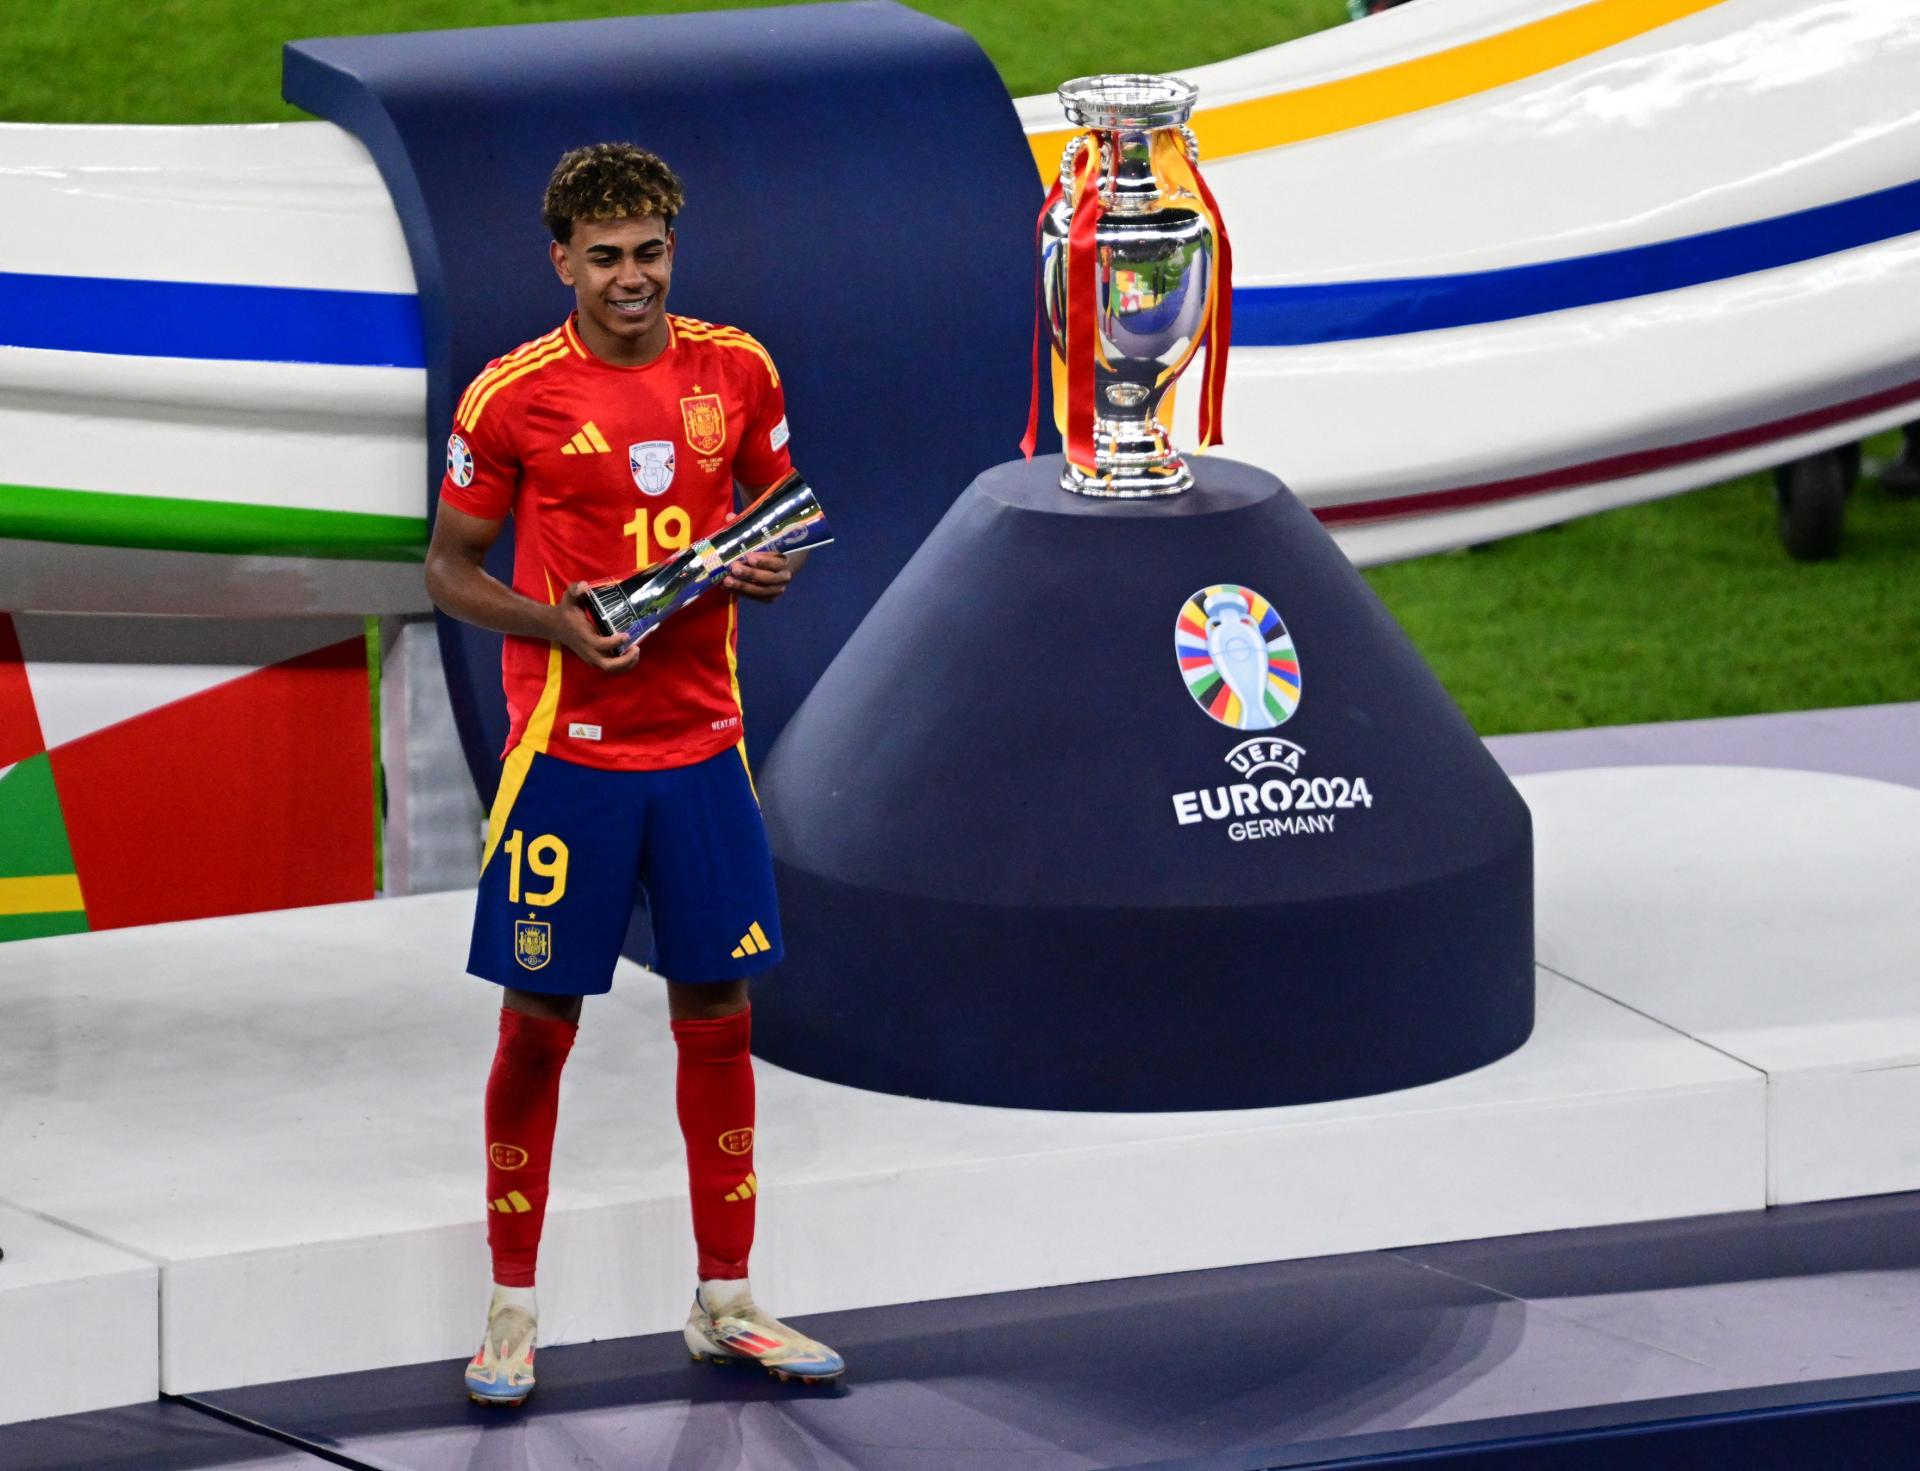 Španielska dominancia: Stredopoliar Rodri je najlepší hráč majstrovstiev, Yamal zaujal ako naj mladík